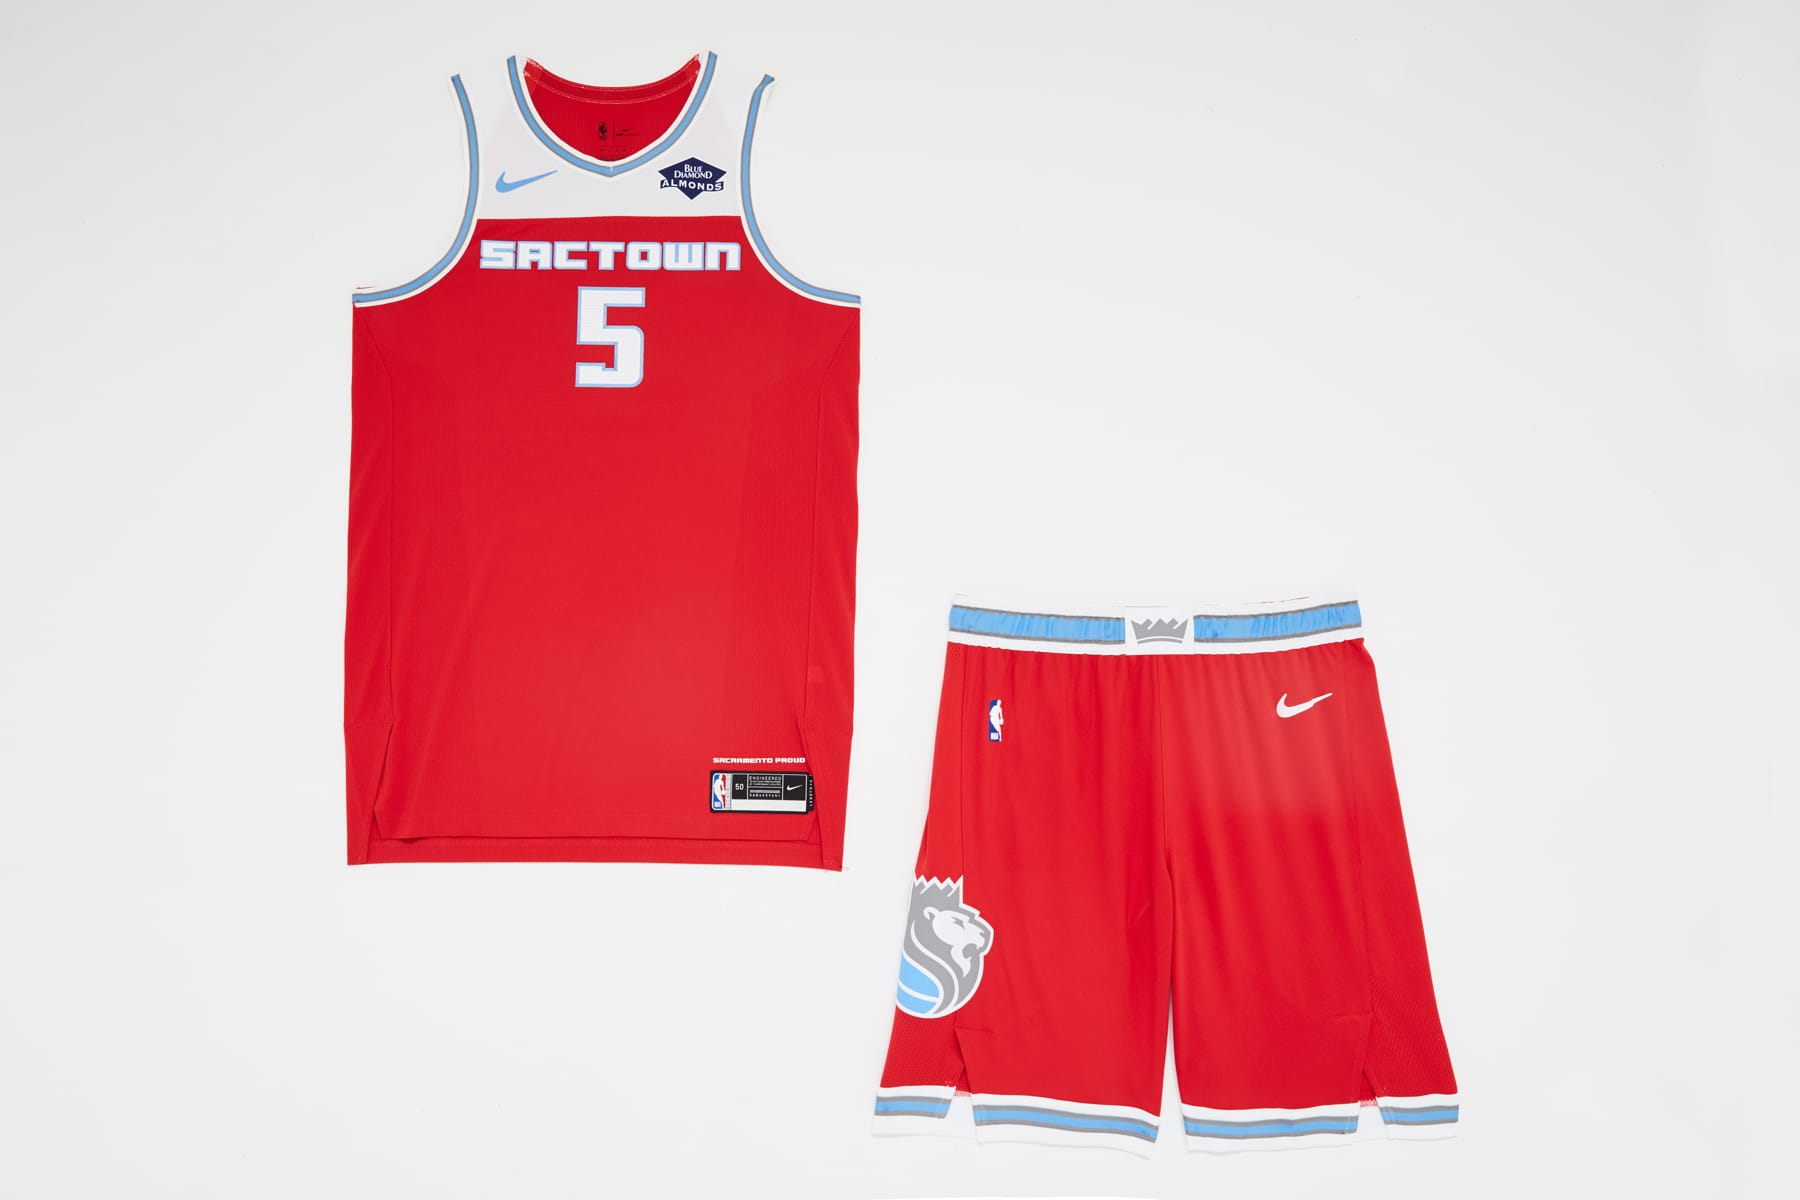 new nba basketball jersey design 2019